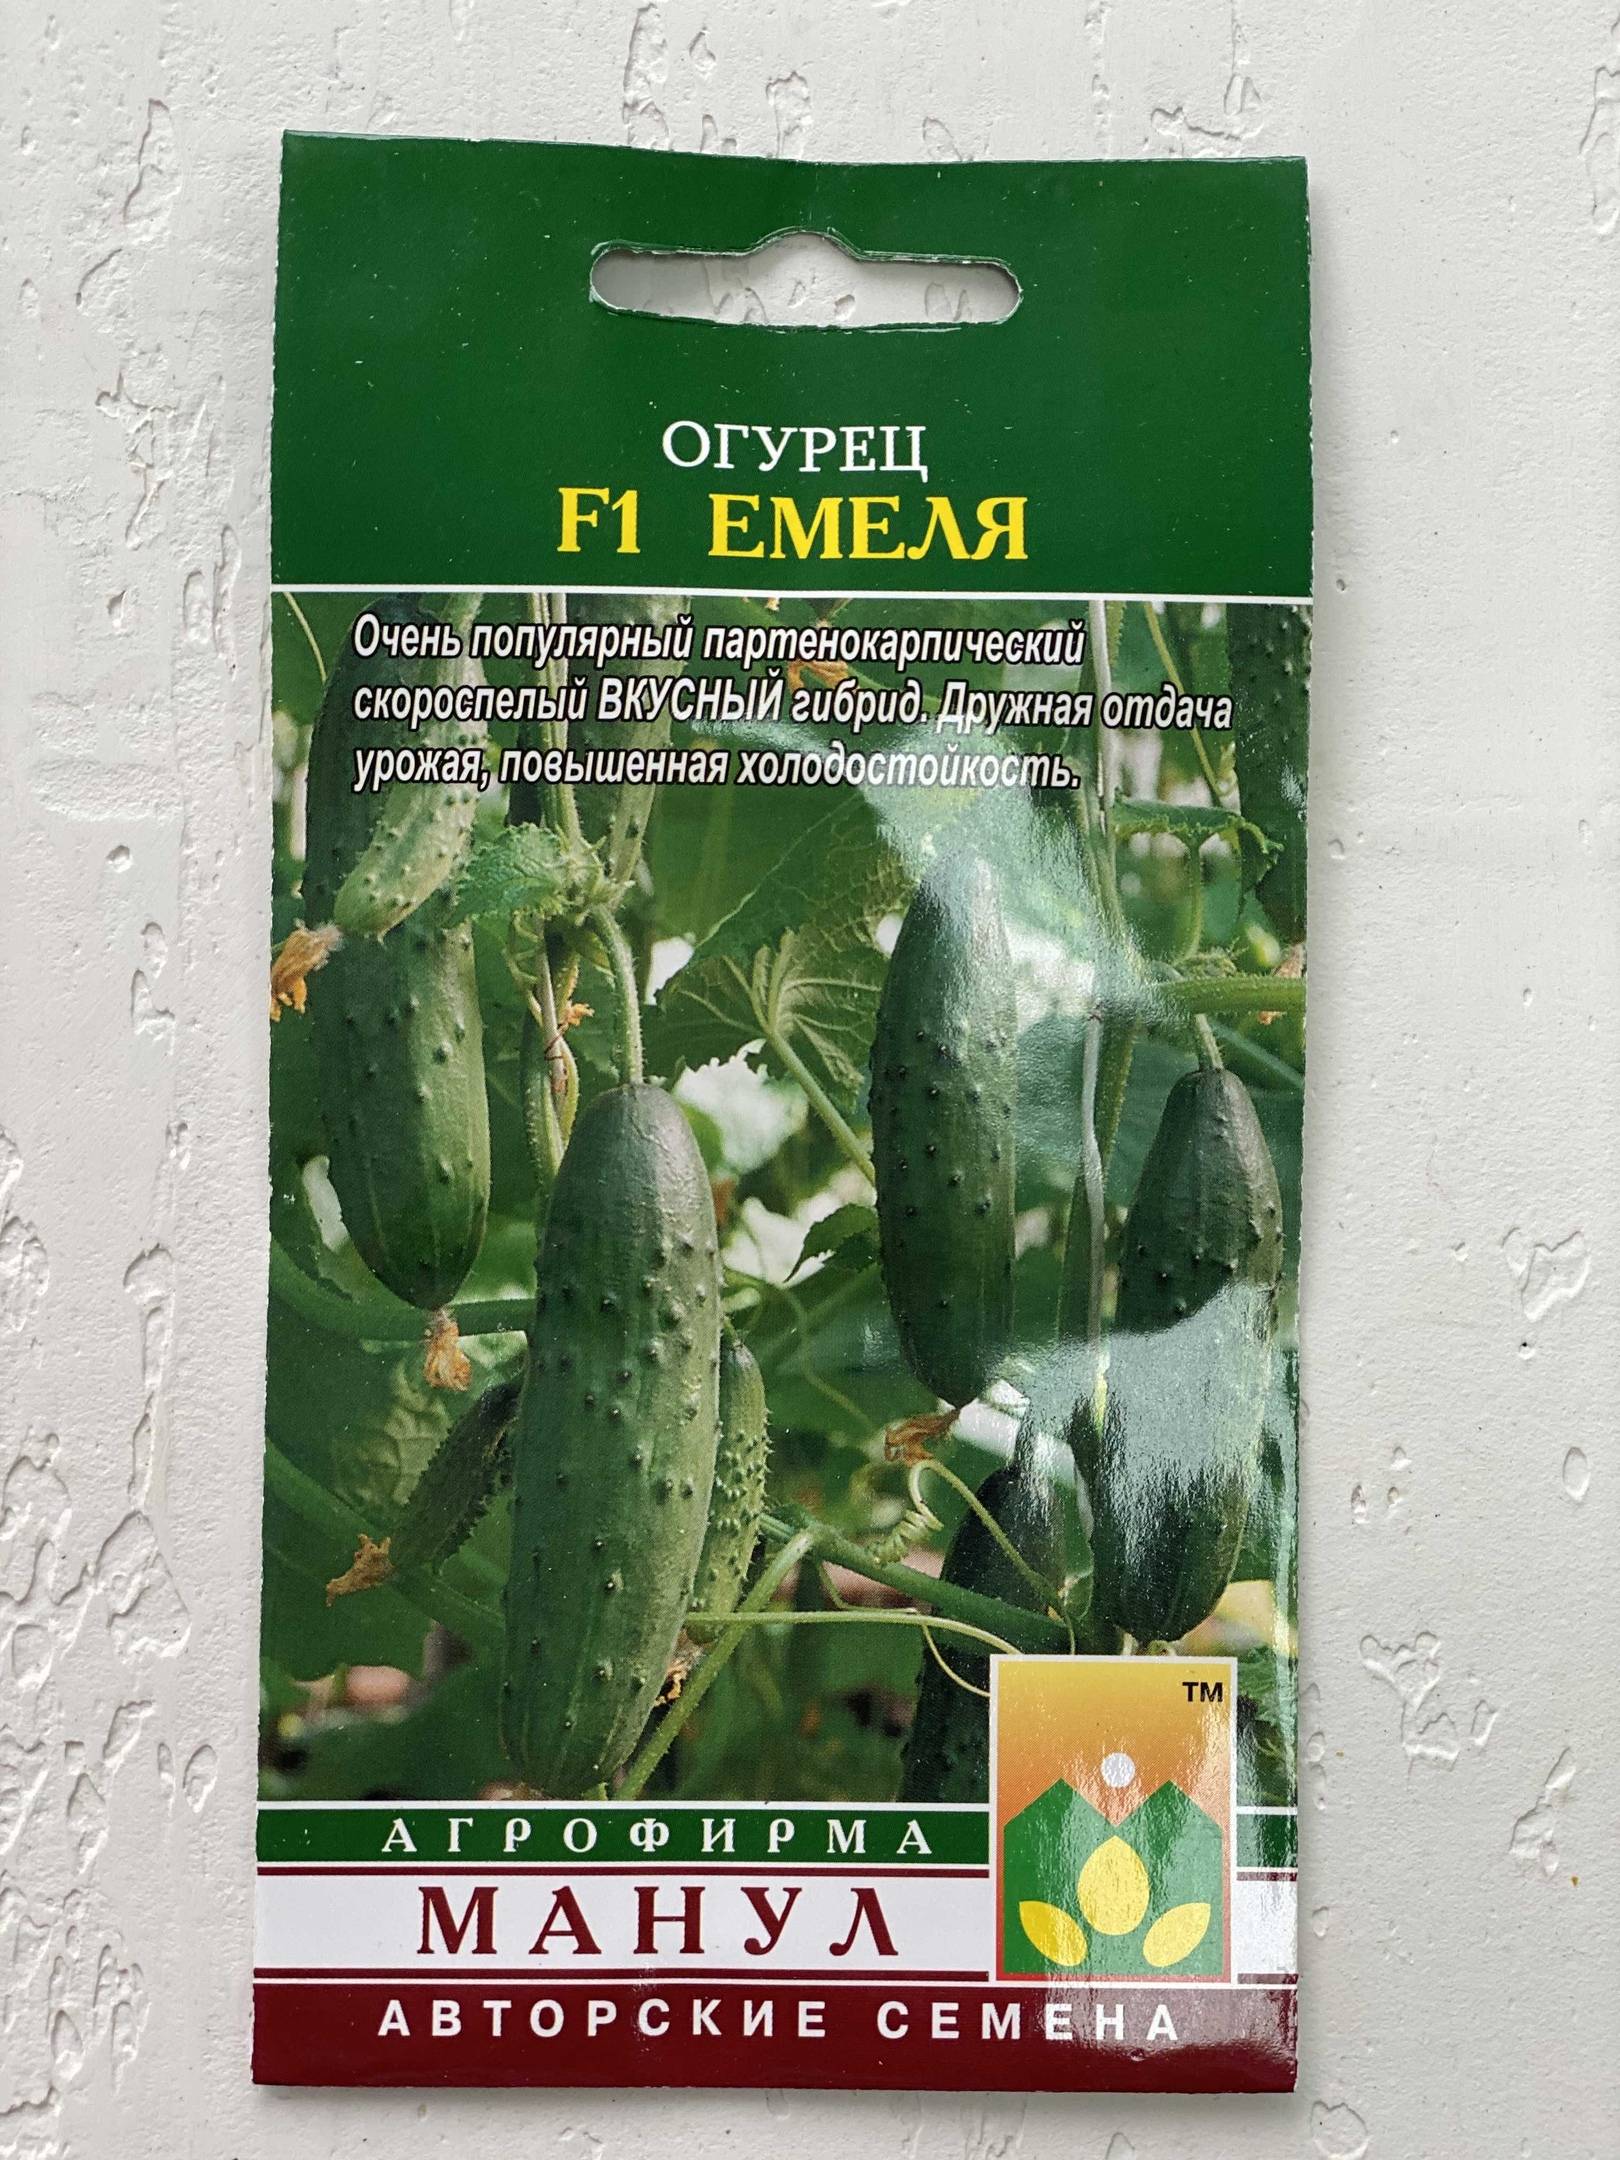 Описание огурцов емеля f1 и выращивание рассадным методом в теплице